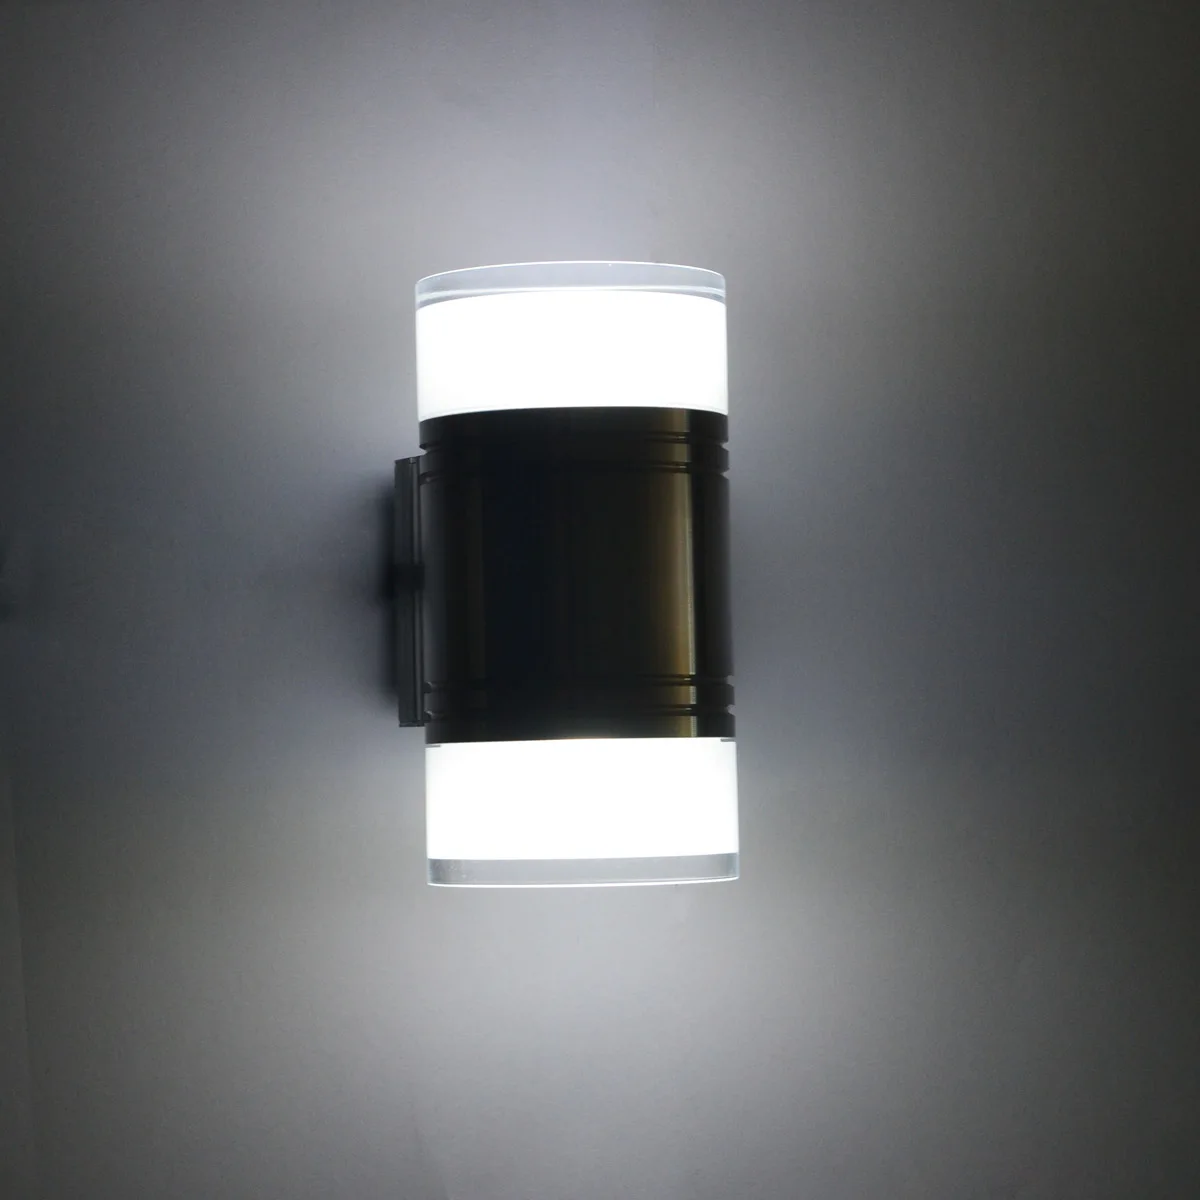 Jiawen вилла Настенные светильники в коридор Открытый водонепроницаемый светодиодный настенный светильник 6 Вт, вверх и вниз освещение(AC85-265V - Испускаемый цвет: Холодный белый